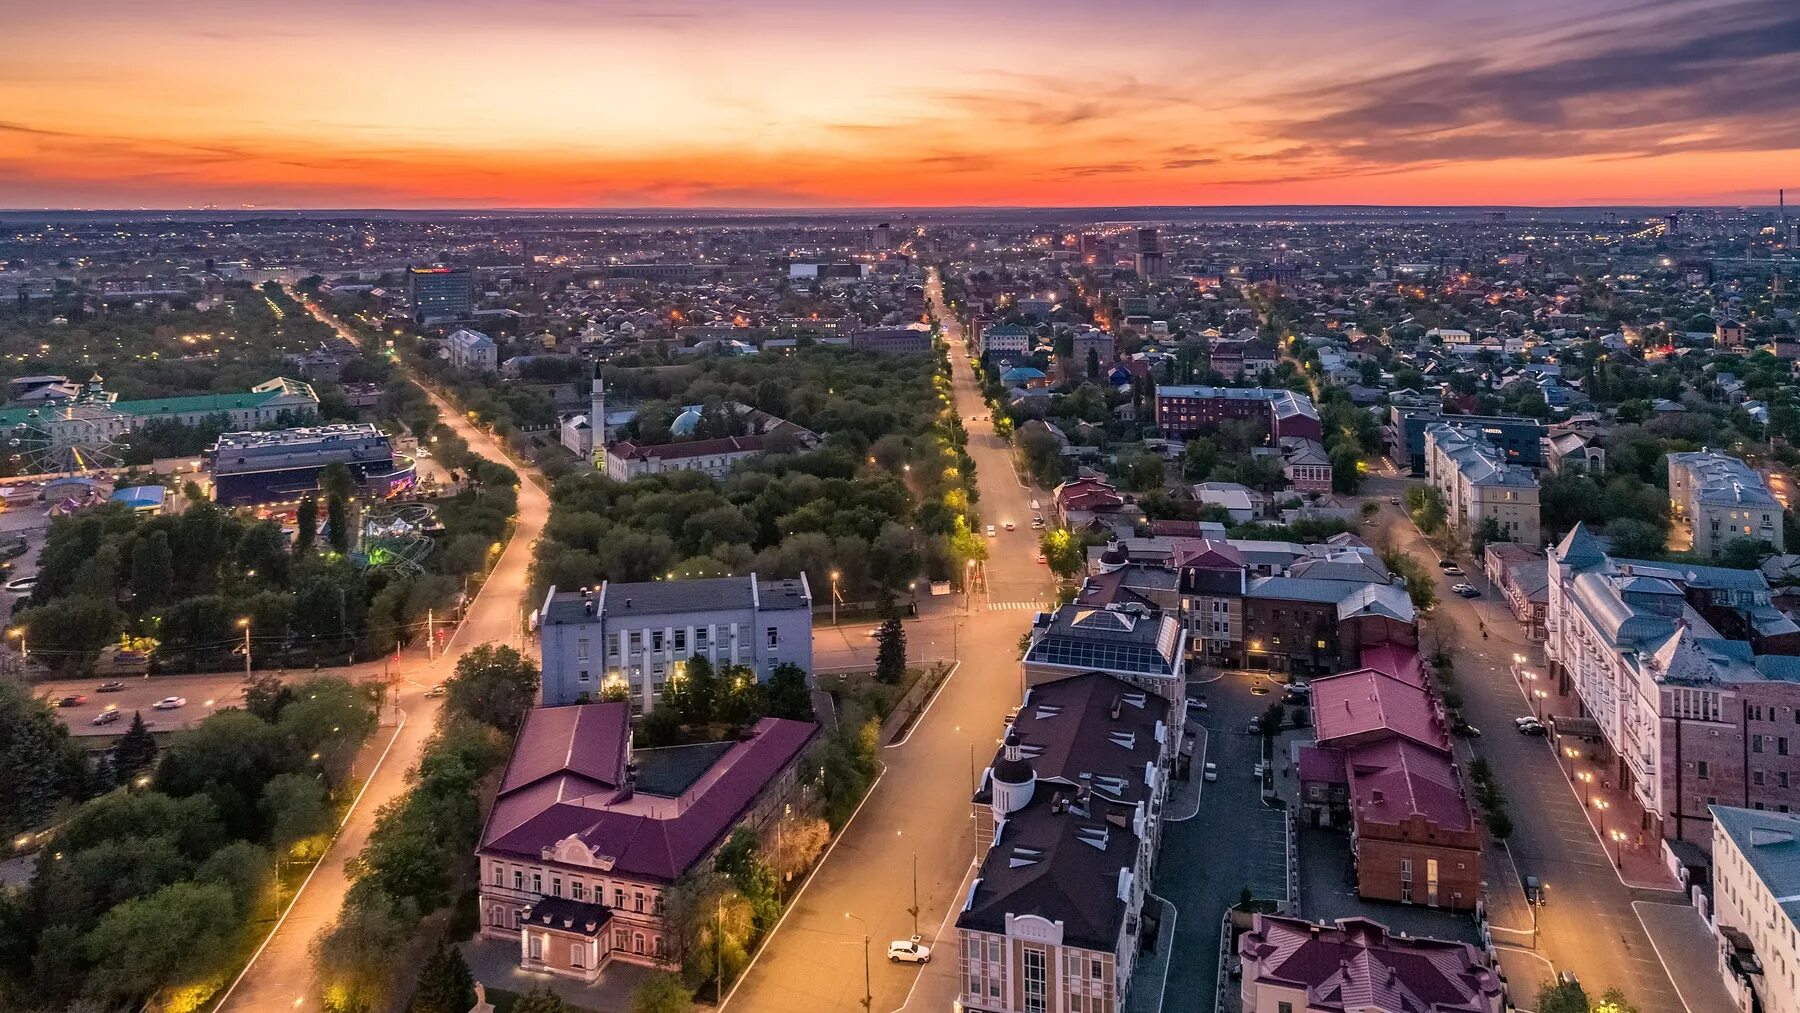 Оренбург центр города. Оренбург панорама. Оренбург с высоты птичьего полета. Оренбург исторический центр.